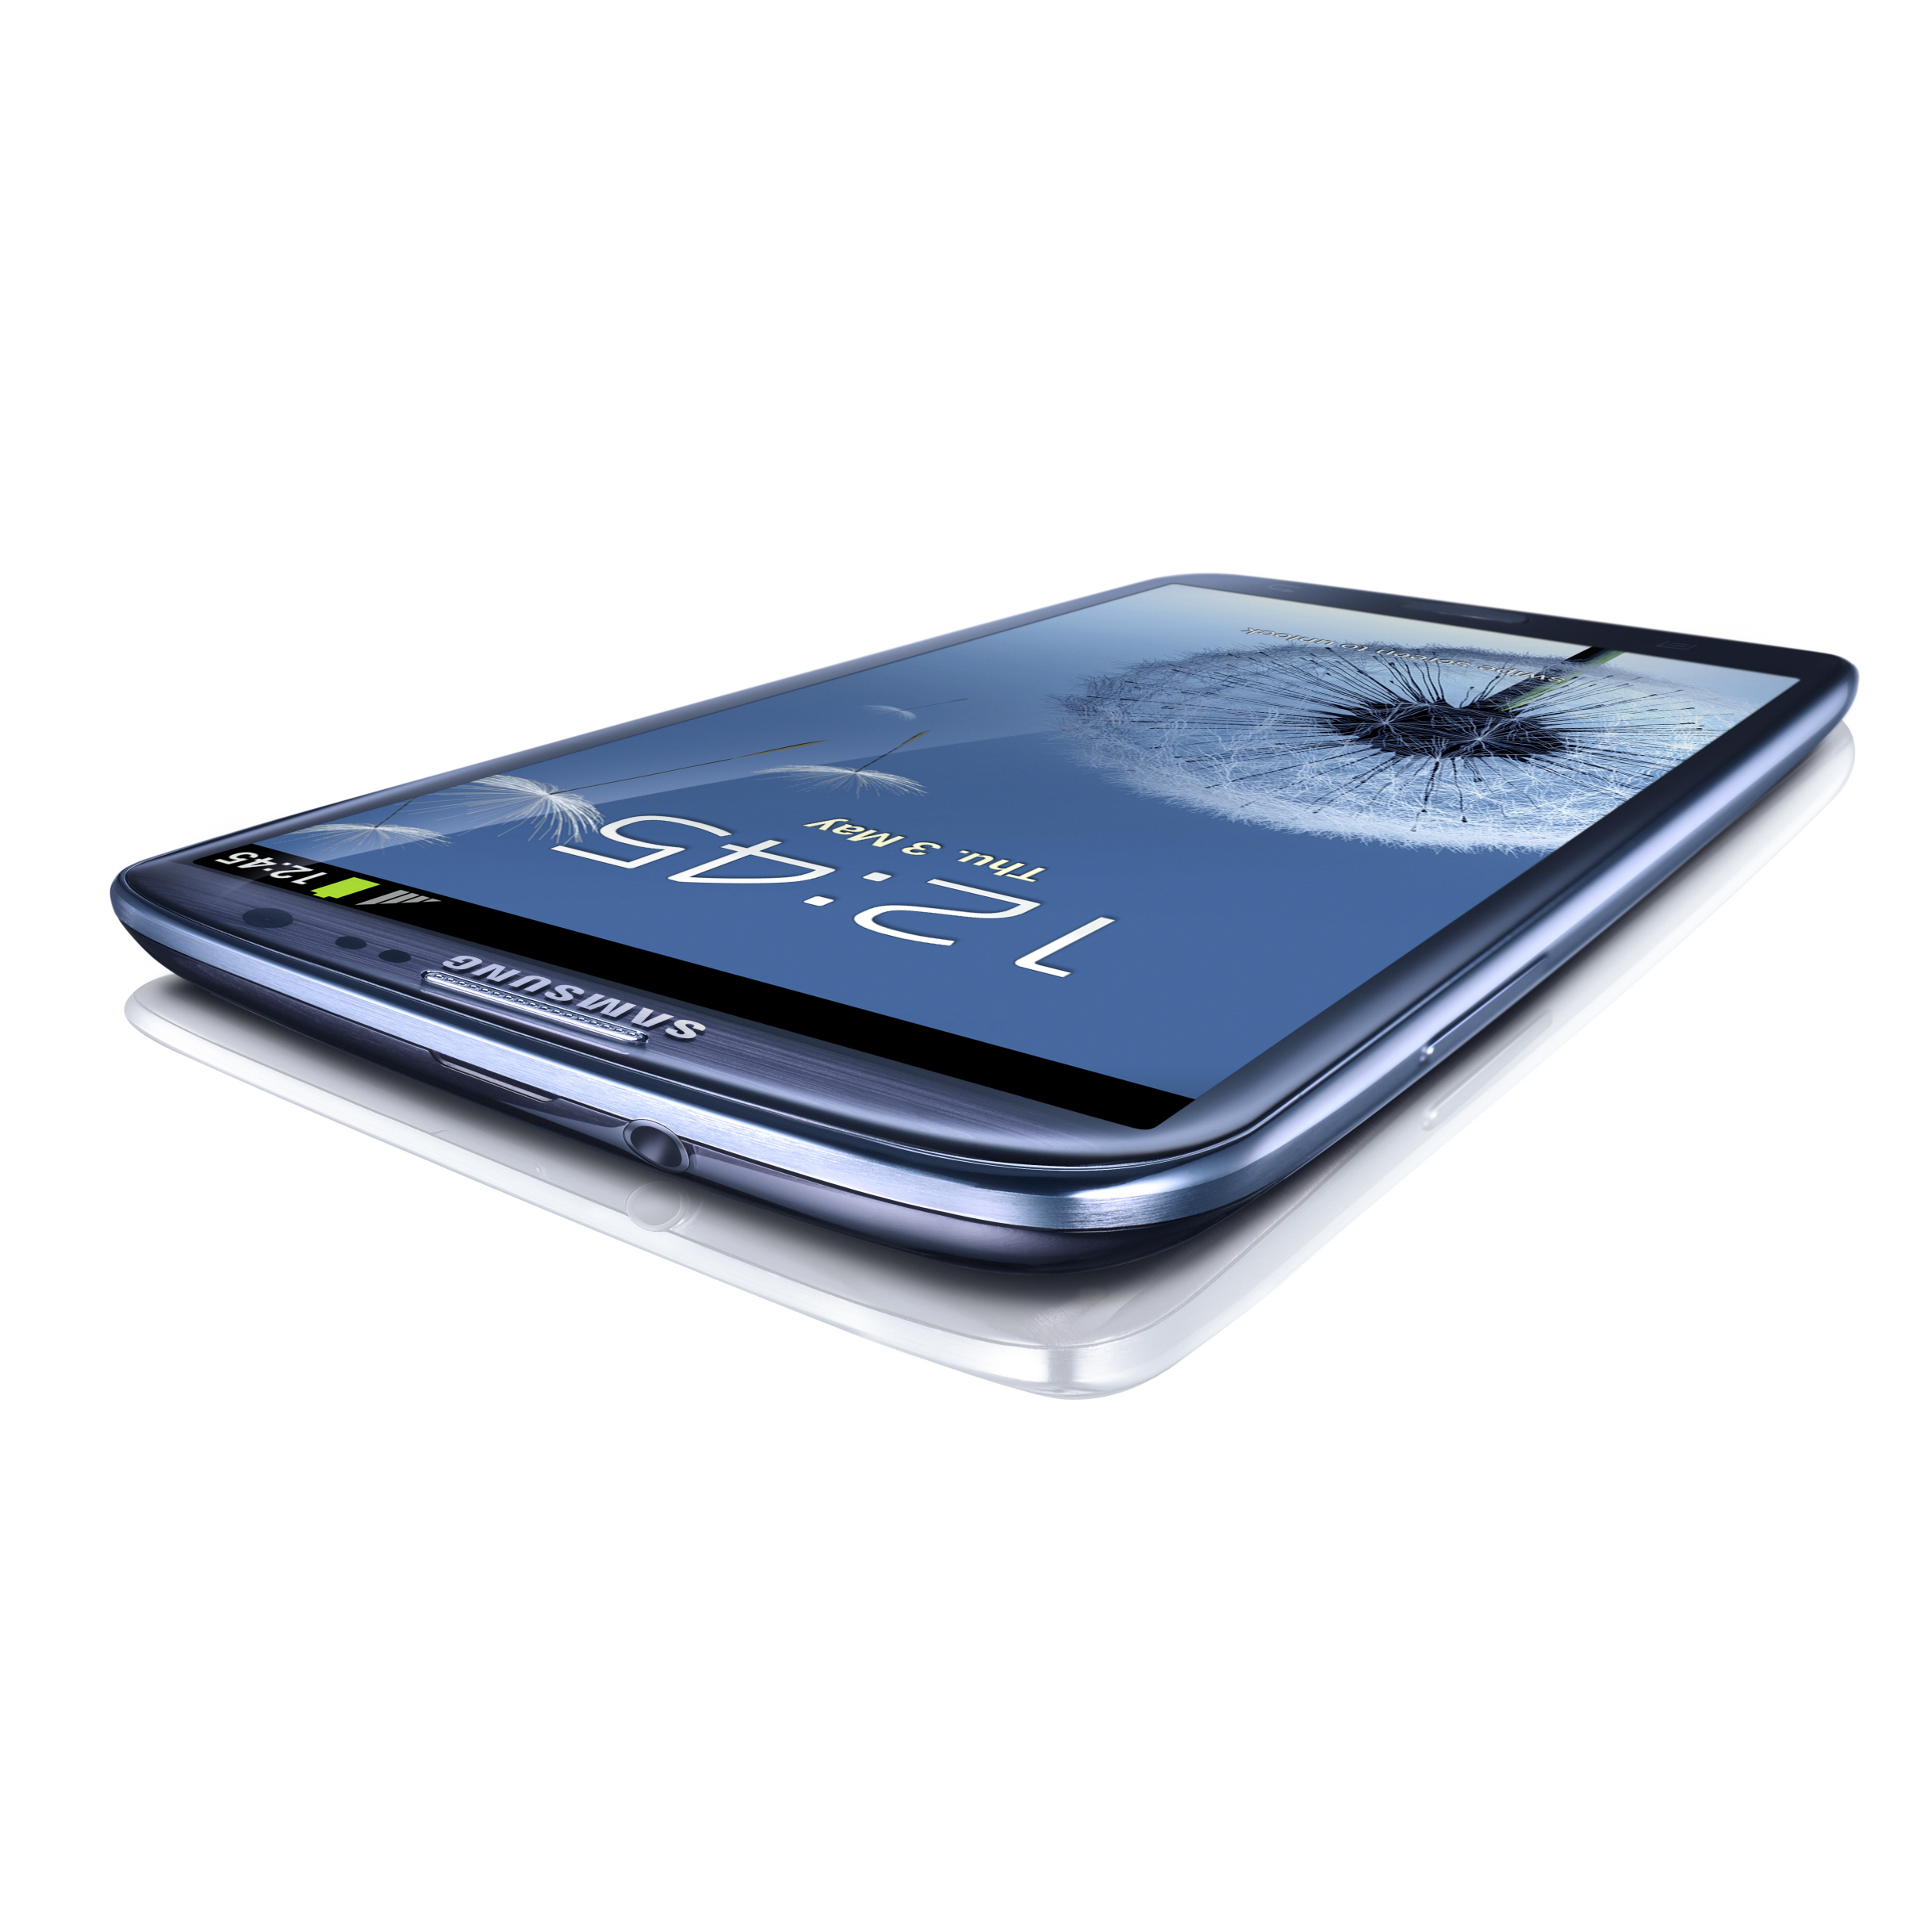 Immagine pubblicata in relazione al seguente contenuto: Samsung Electronics annuncia lo smartphone GALAXY S III | Nome immagine: news17157_6.jpg